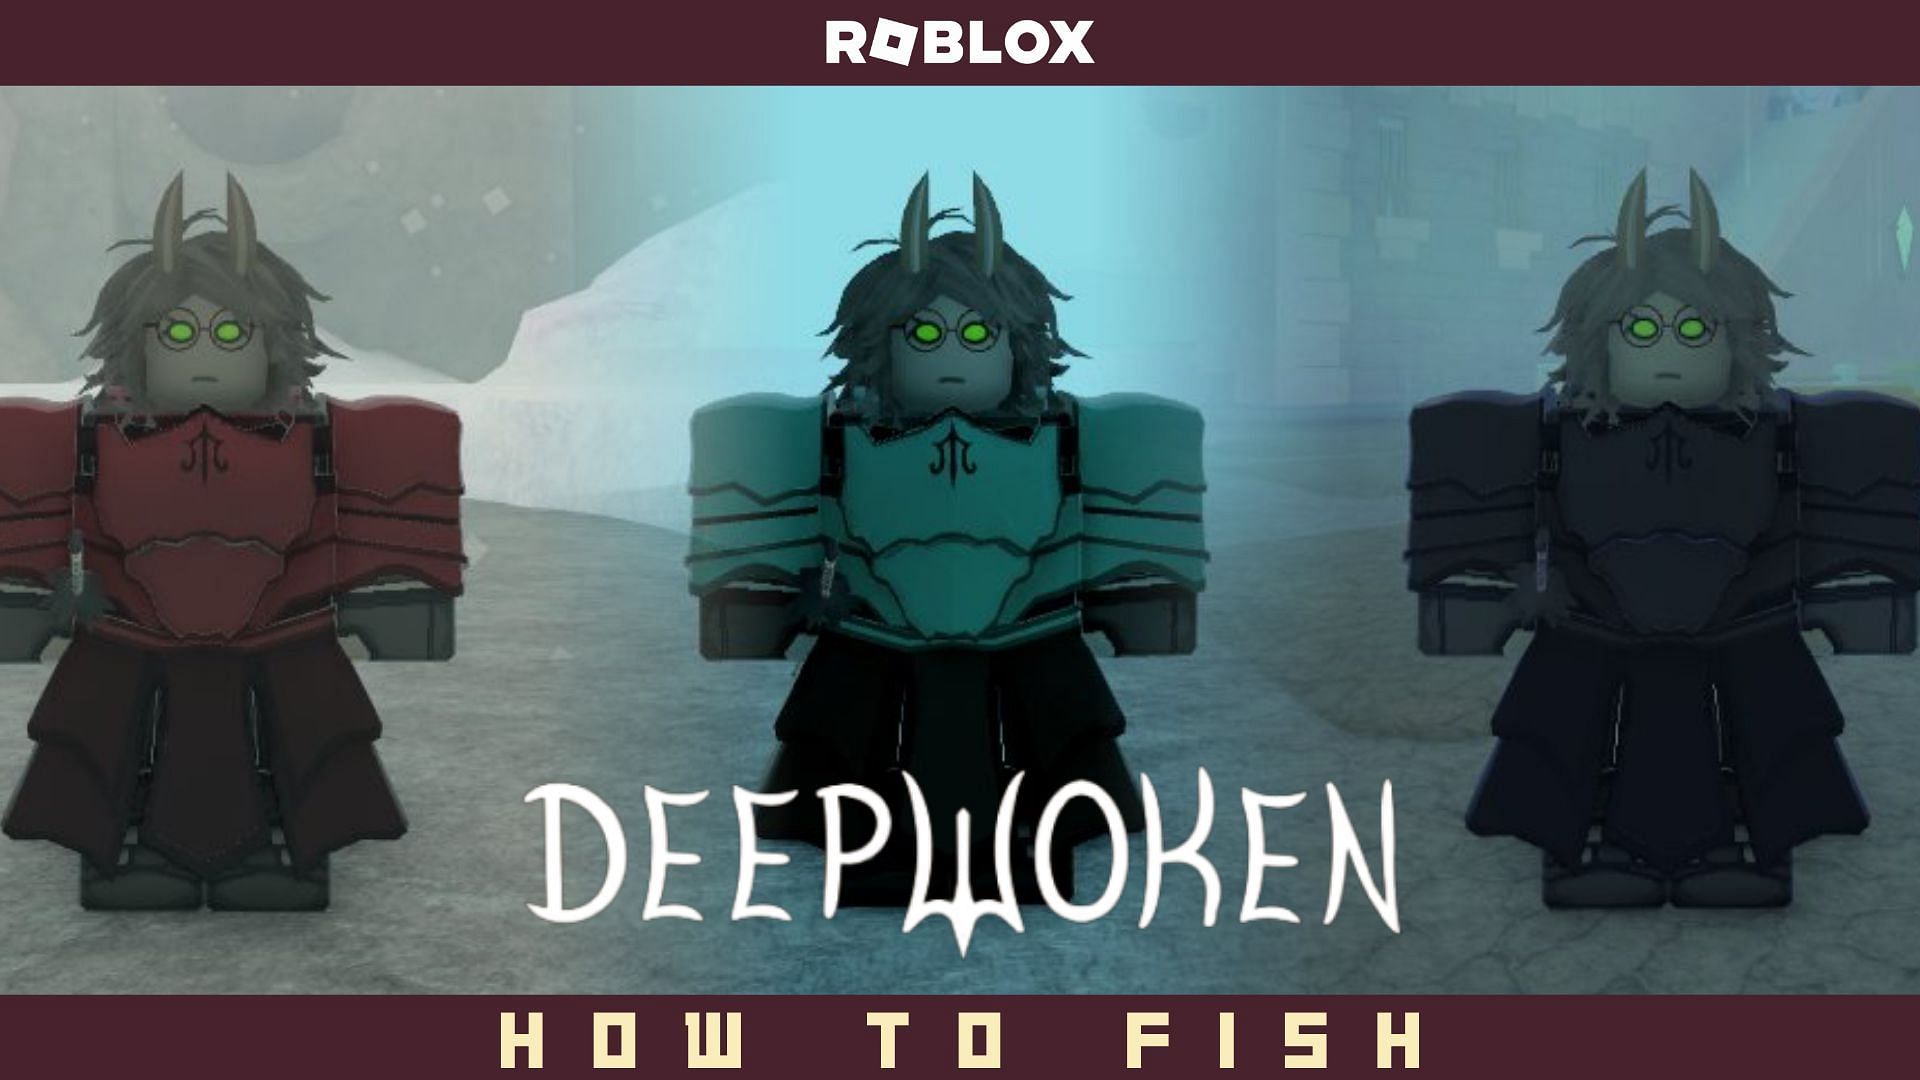 How To Fish In Deepwoken